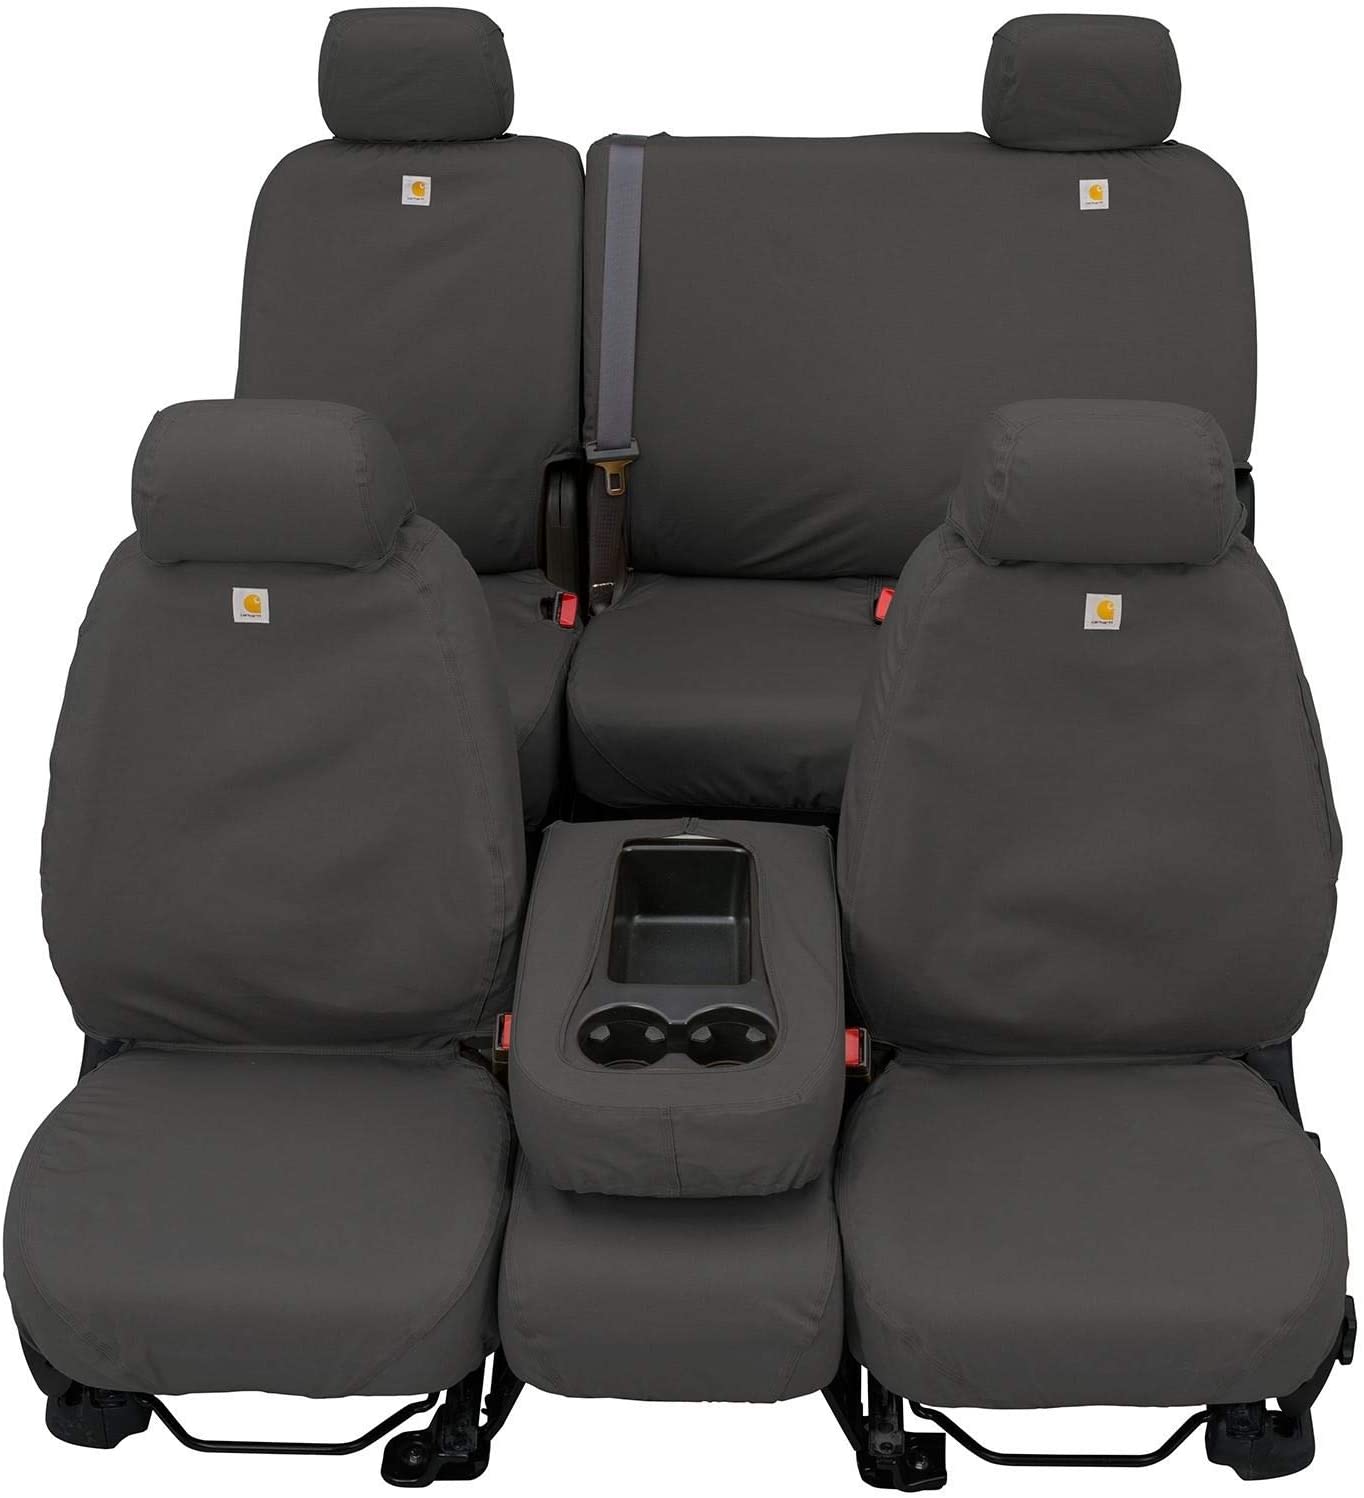 2013 toyota tacoma seat covers